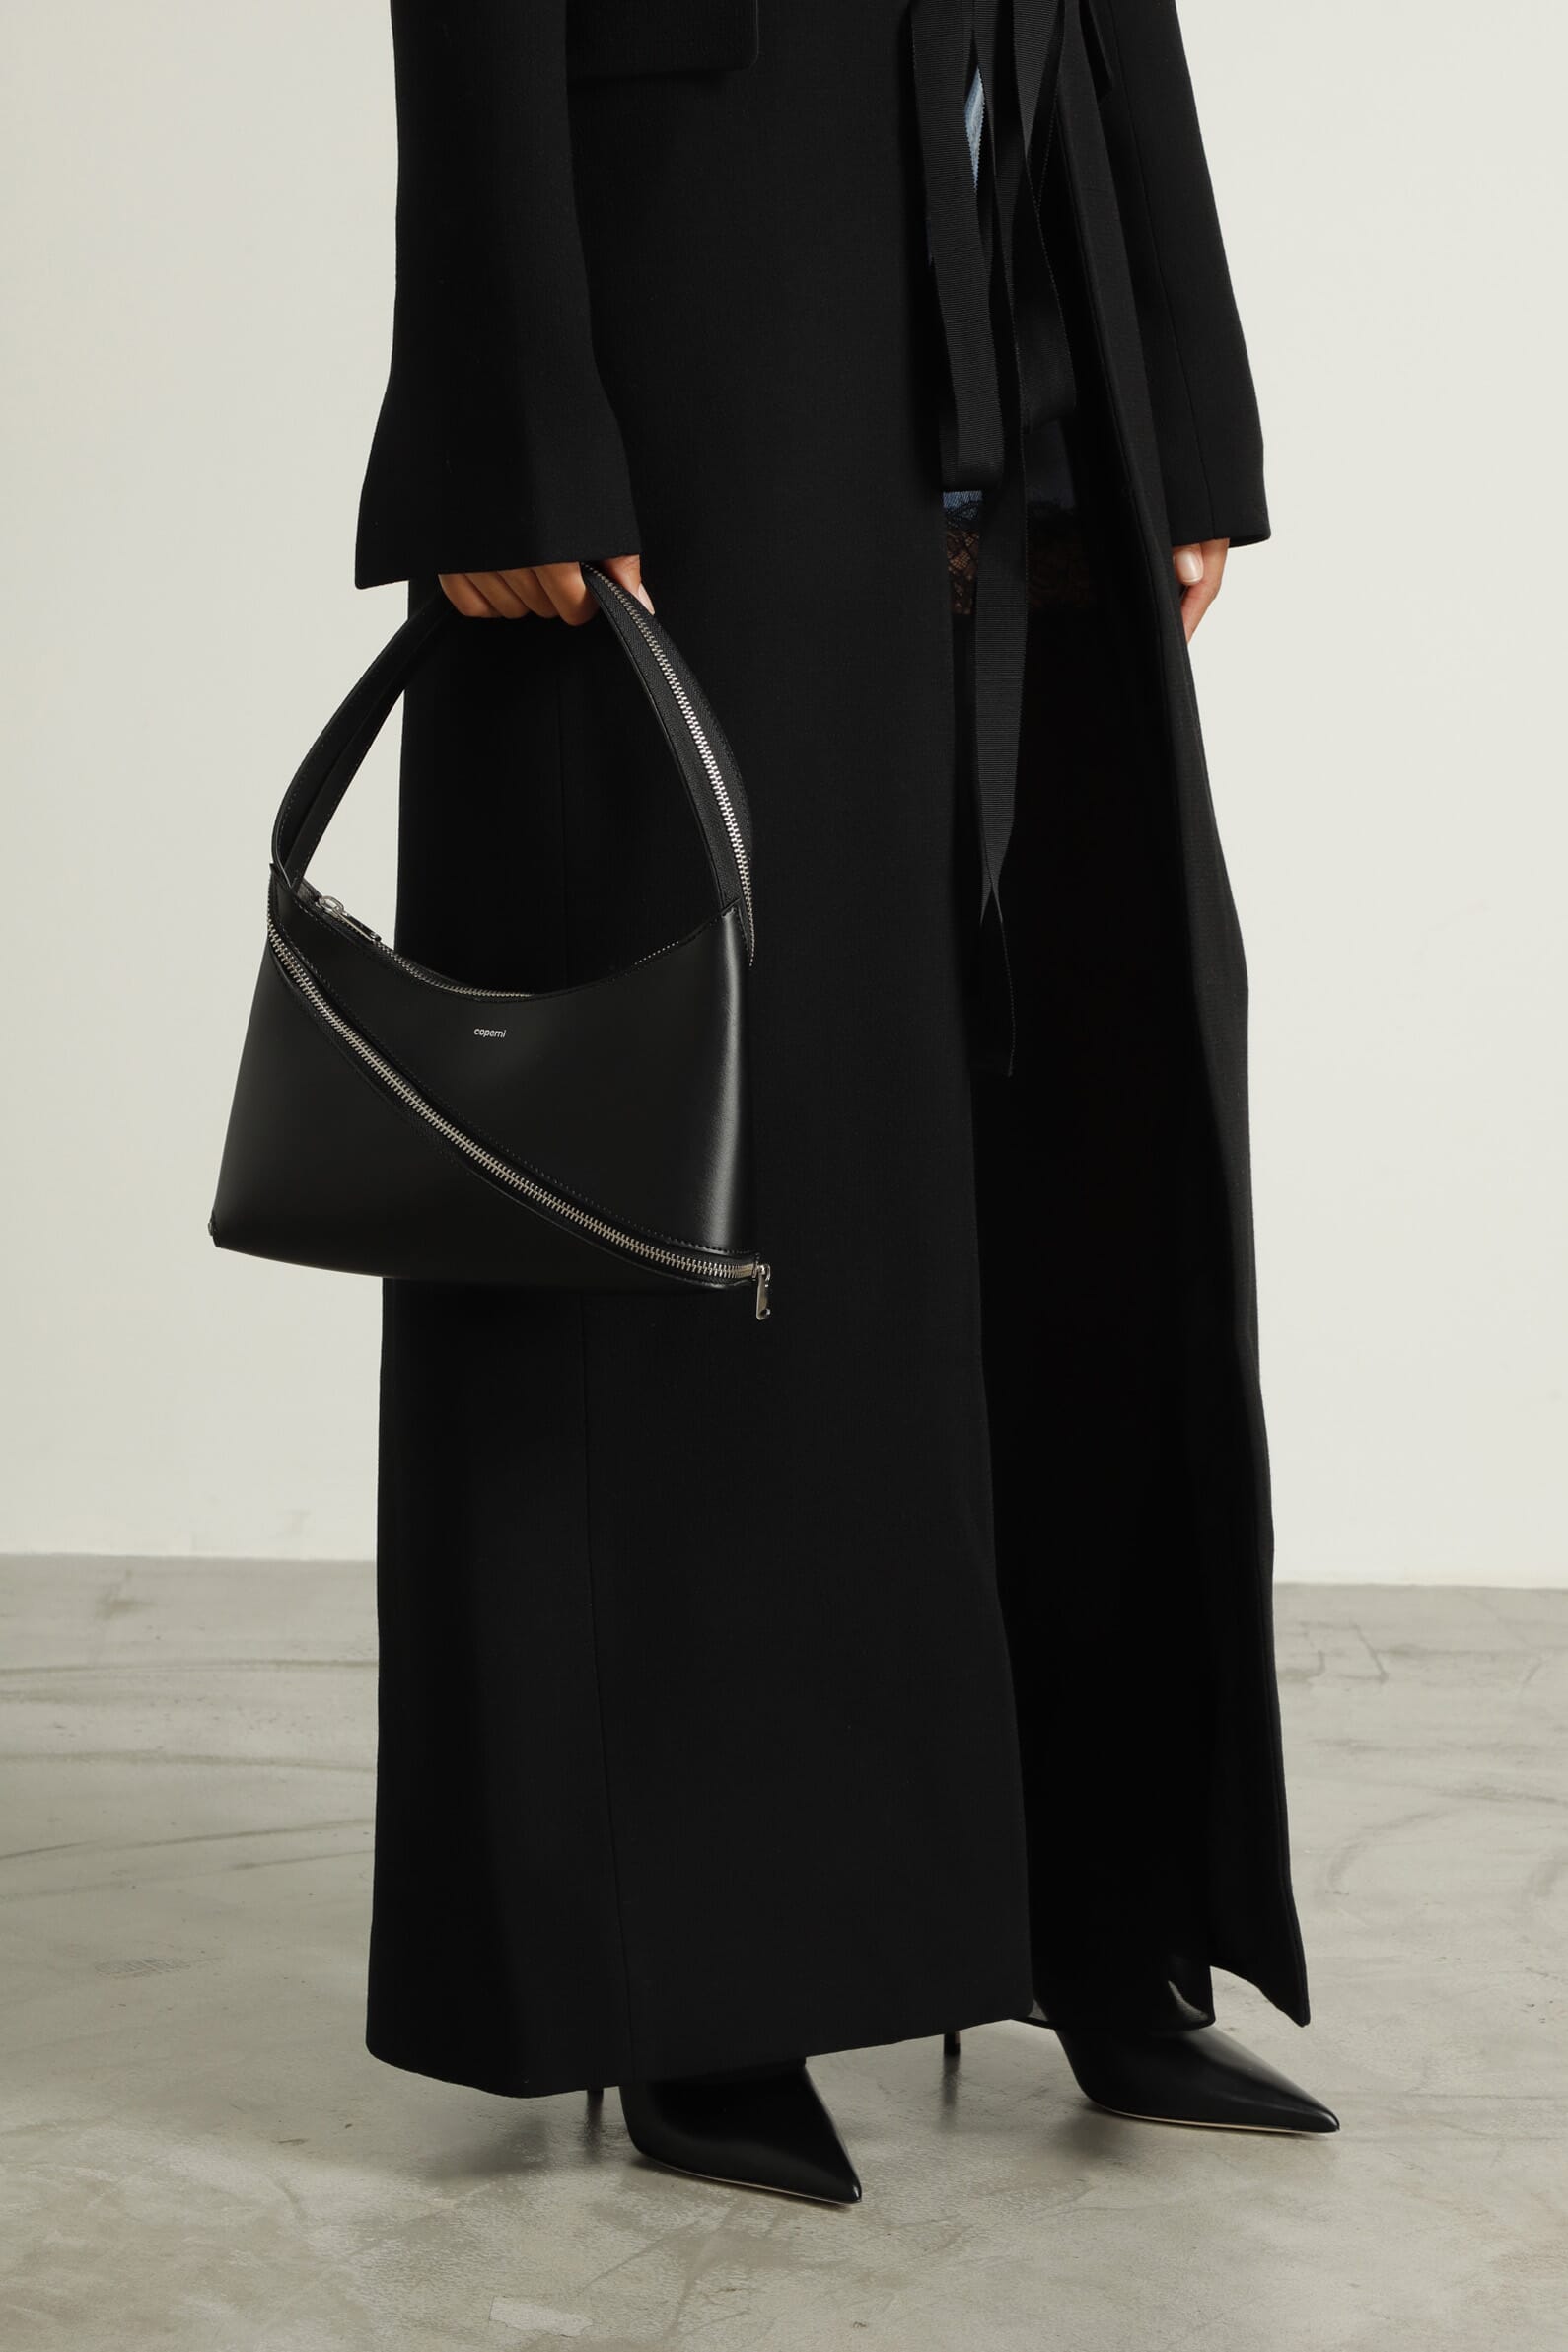 Coperni Black Zip Baguette Bag